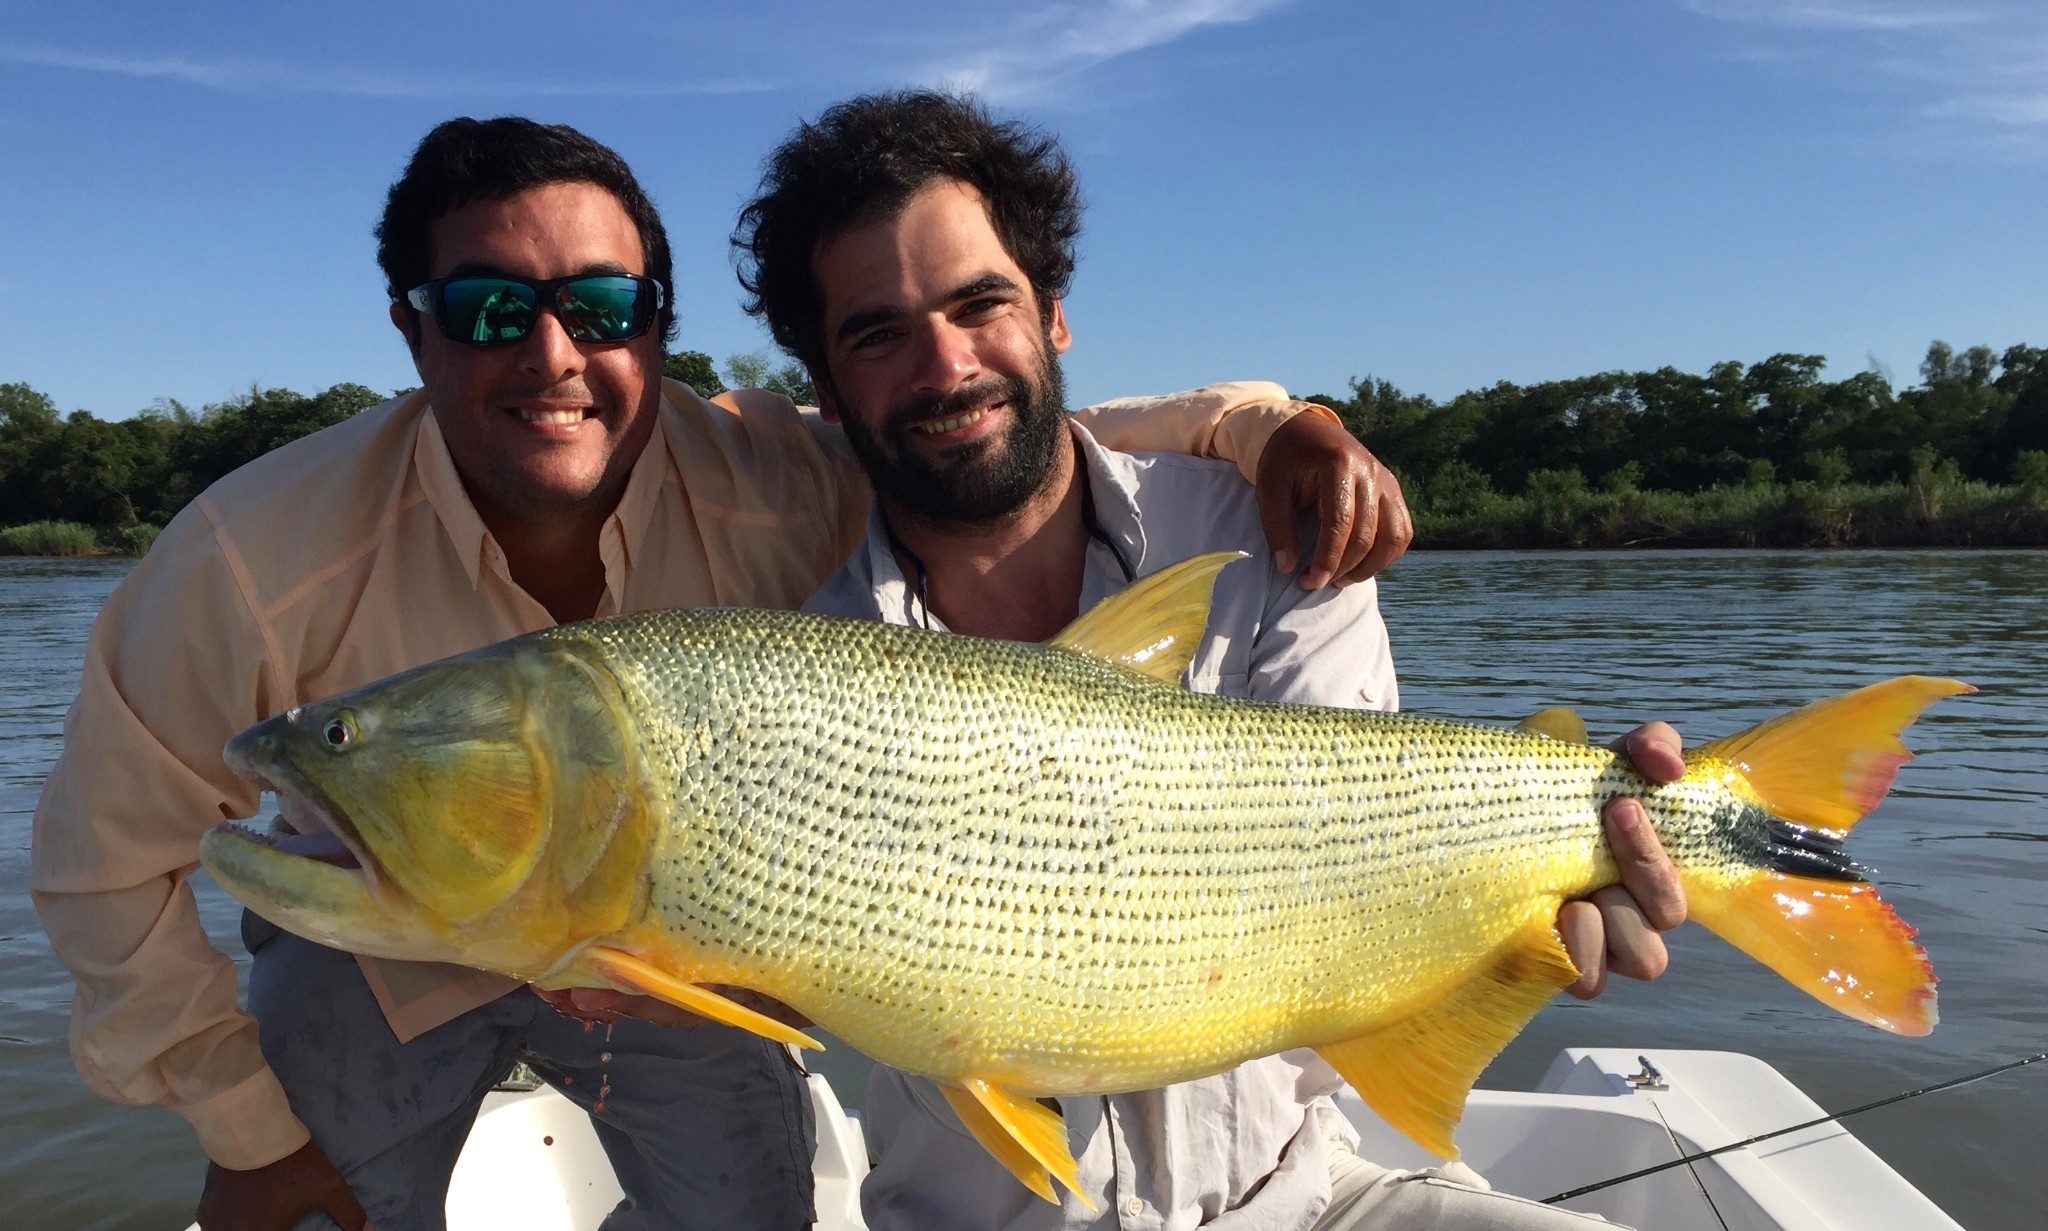  Foto de Pesca con Mosca de Freshwater dorado compartida por Alfonso Aragon – Fly dreamers